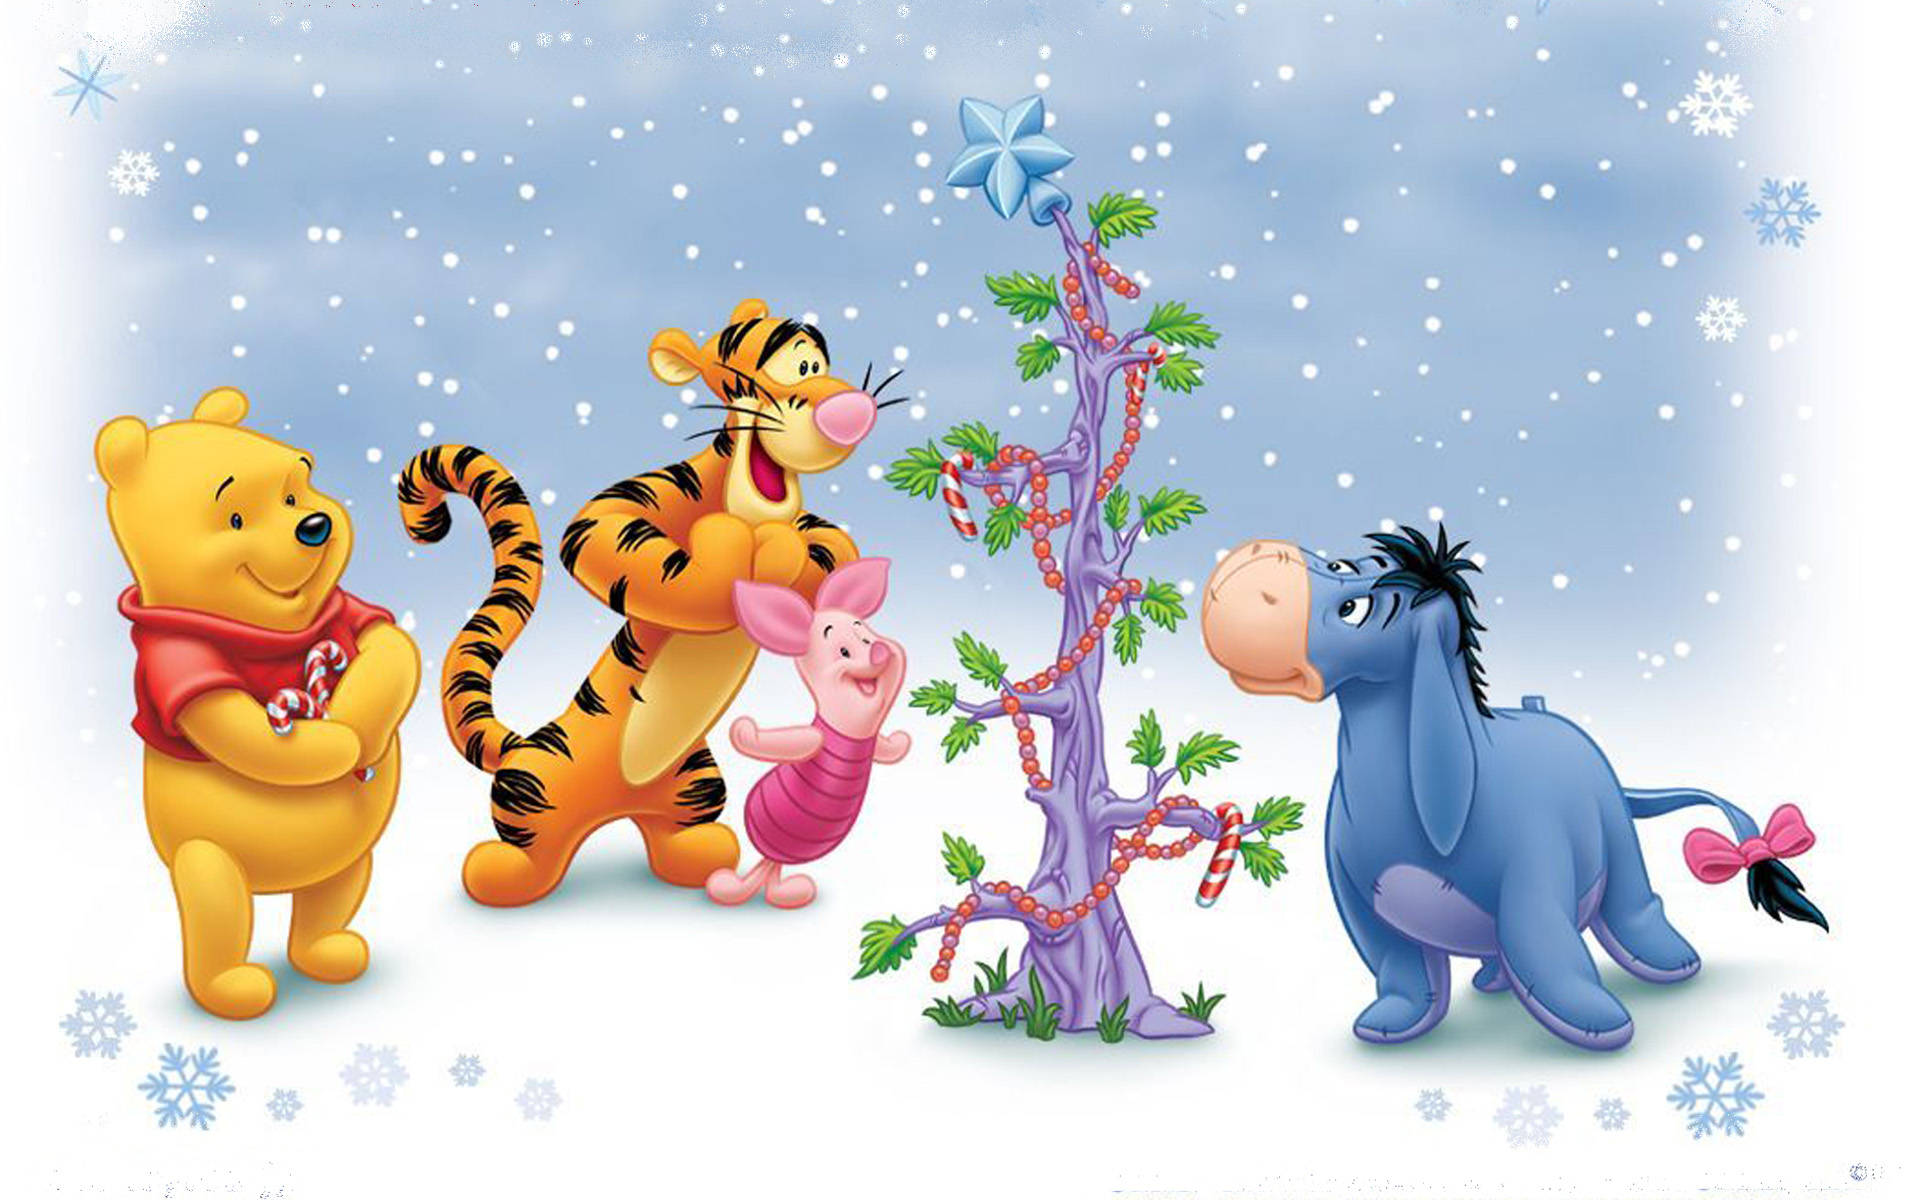 Fejr jul med Winnie the Pooh og venner. Wallpaper